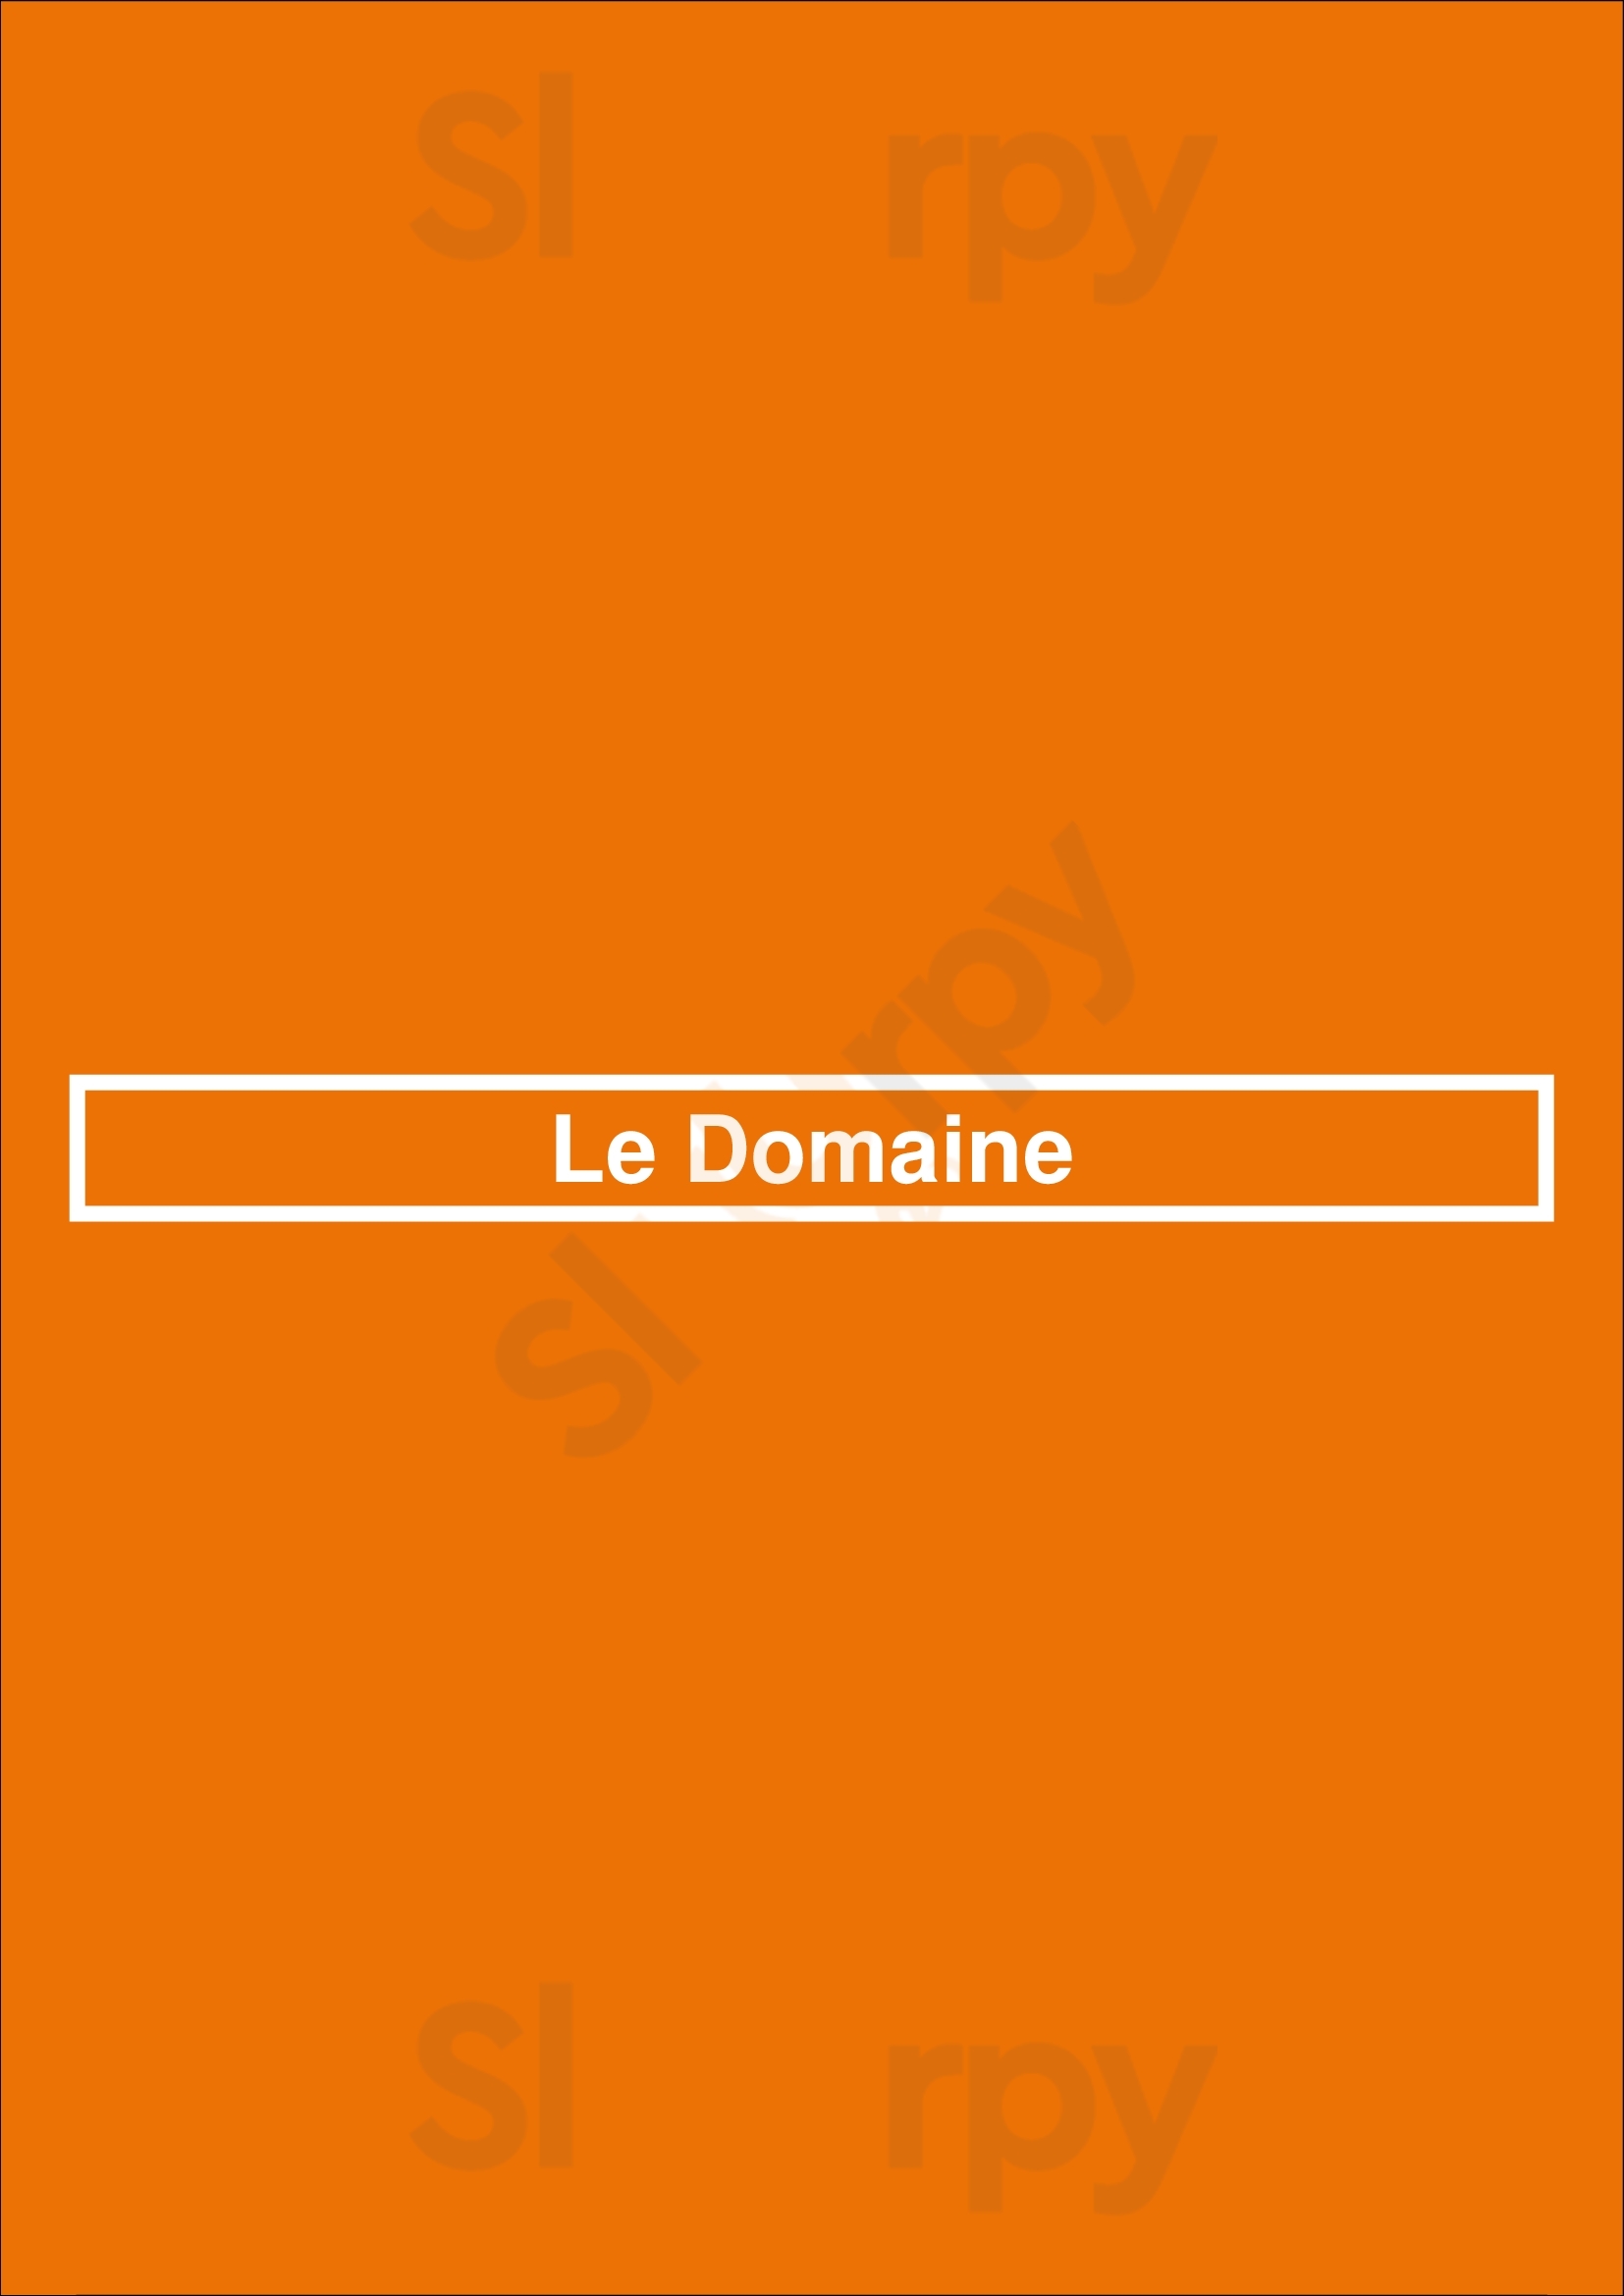 Le Domaine Bordeaux Menu - 1